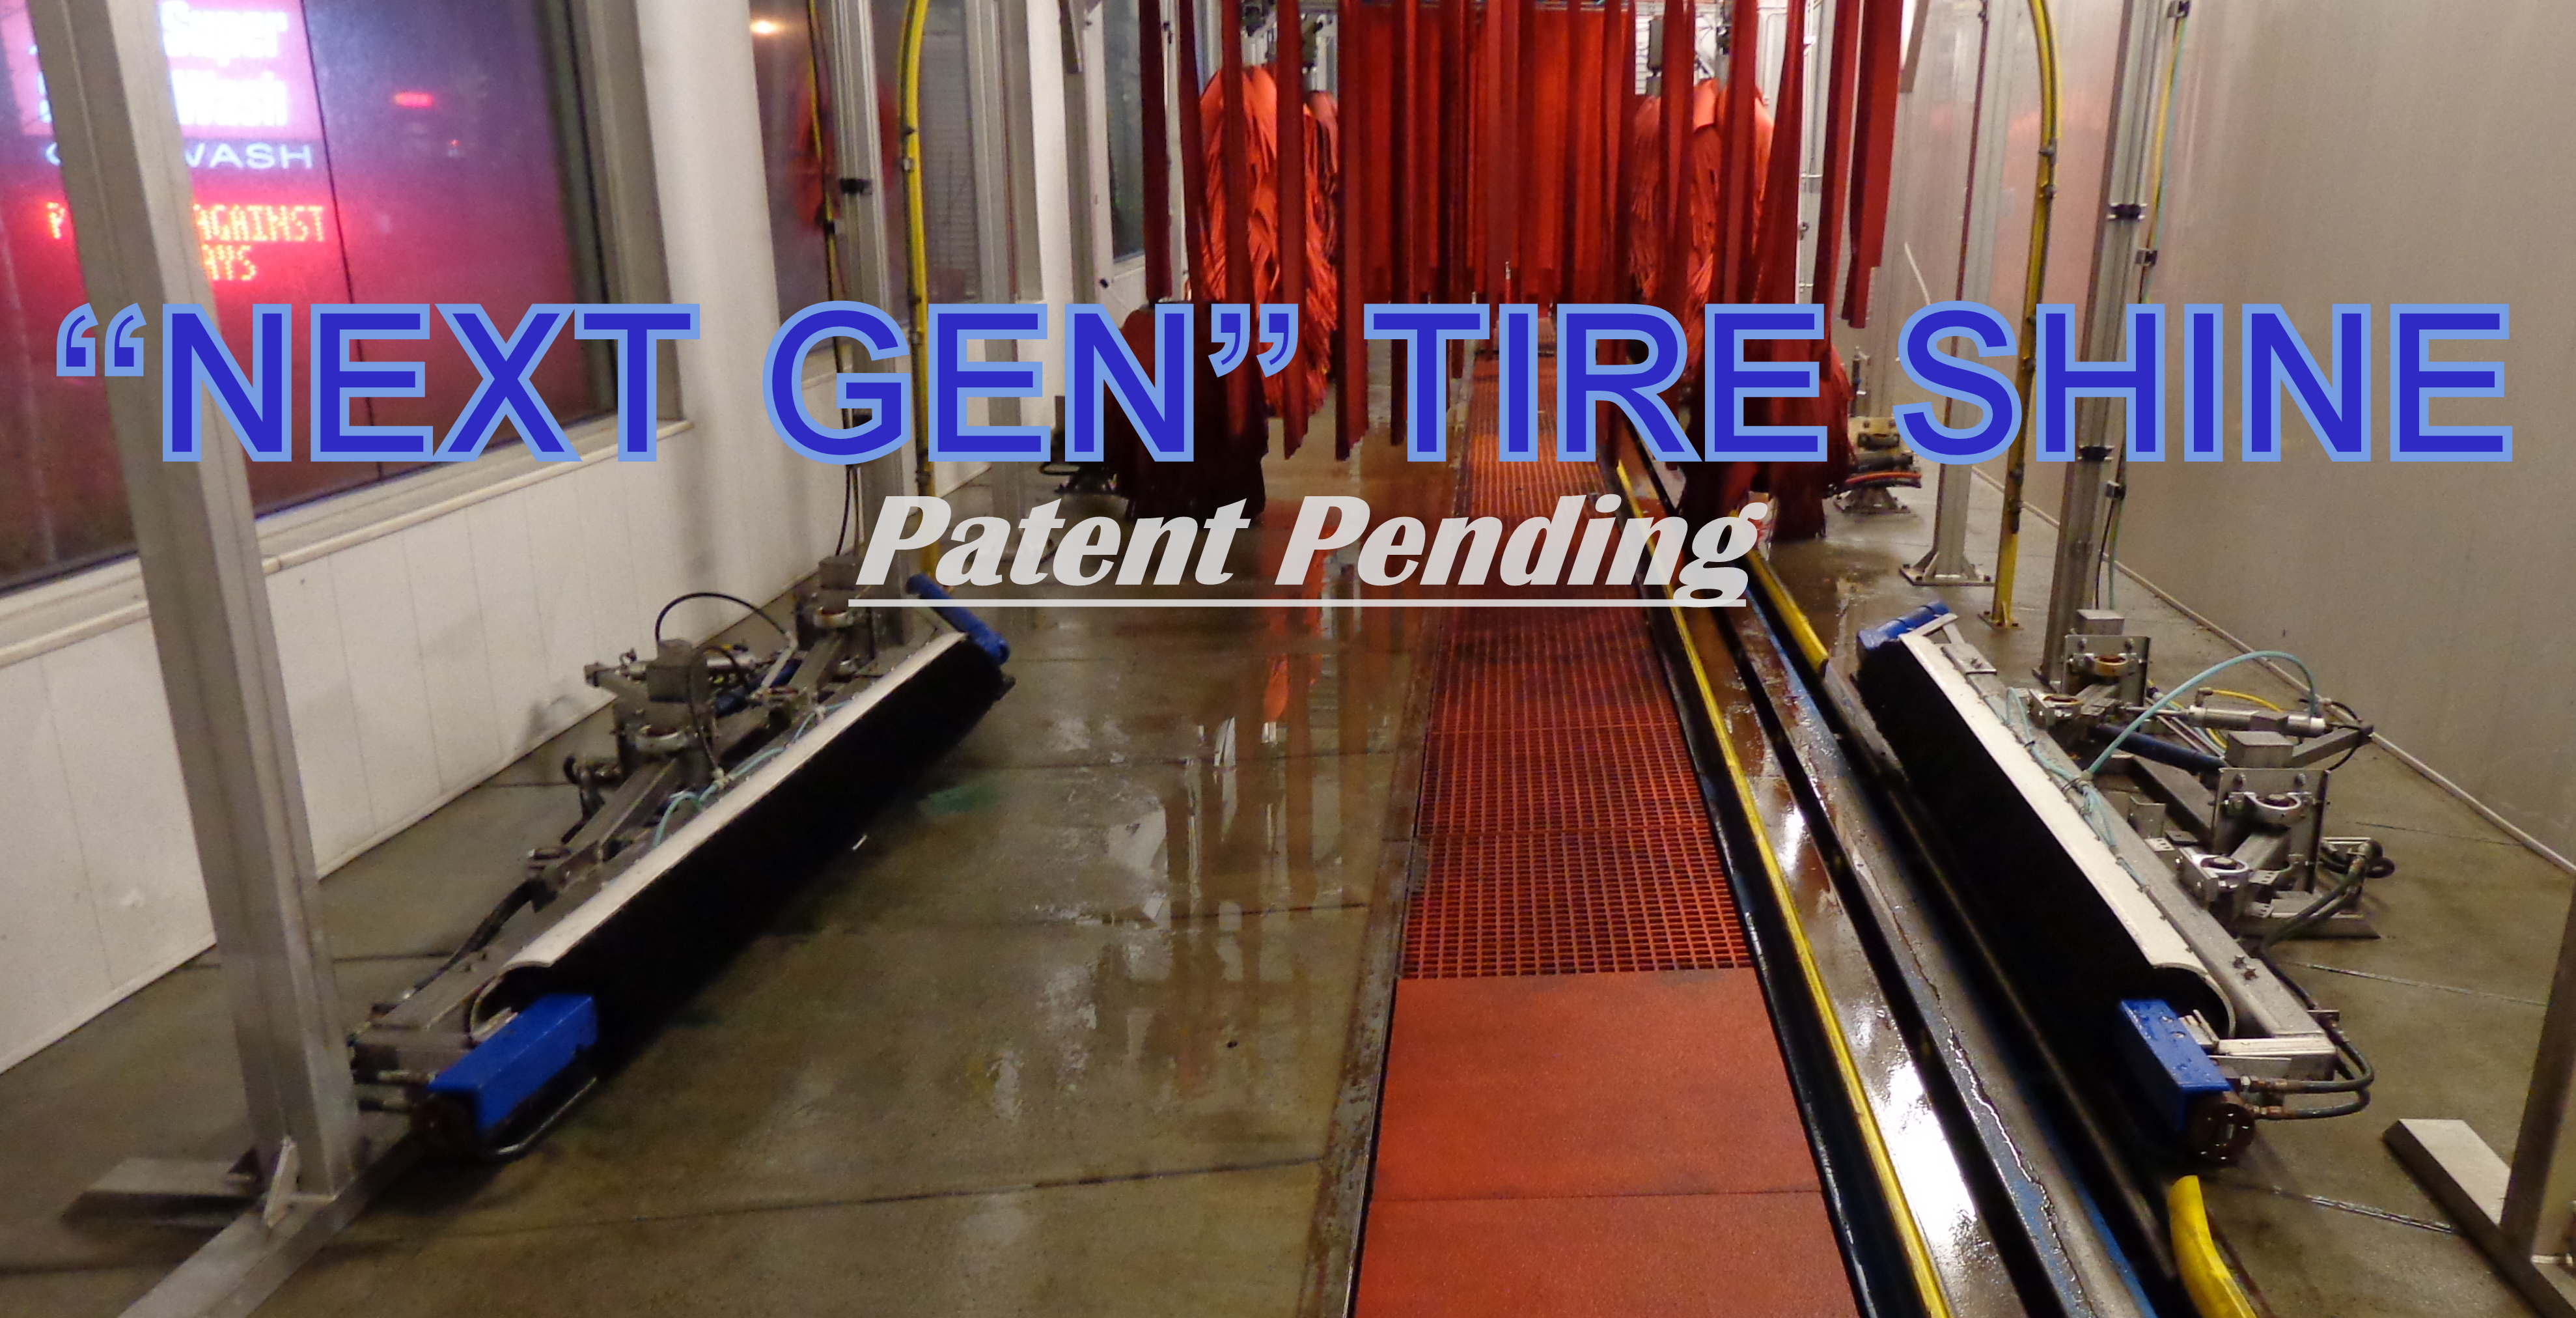 "Next Gen" Tire Shine {Patent Pending}